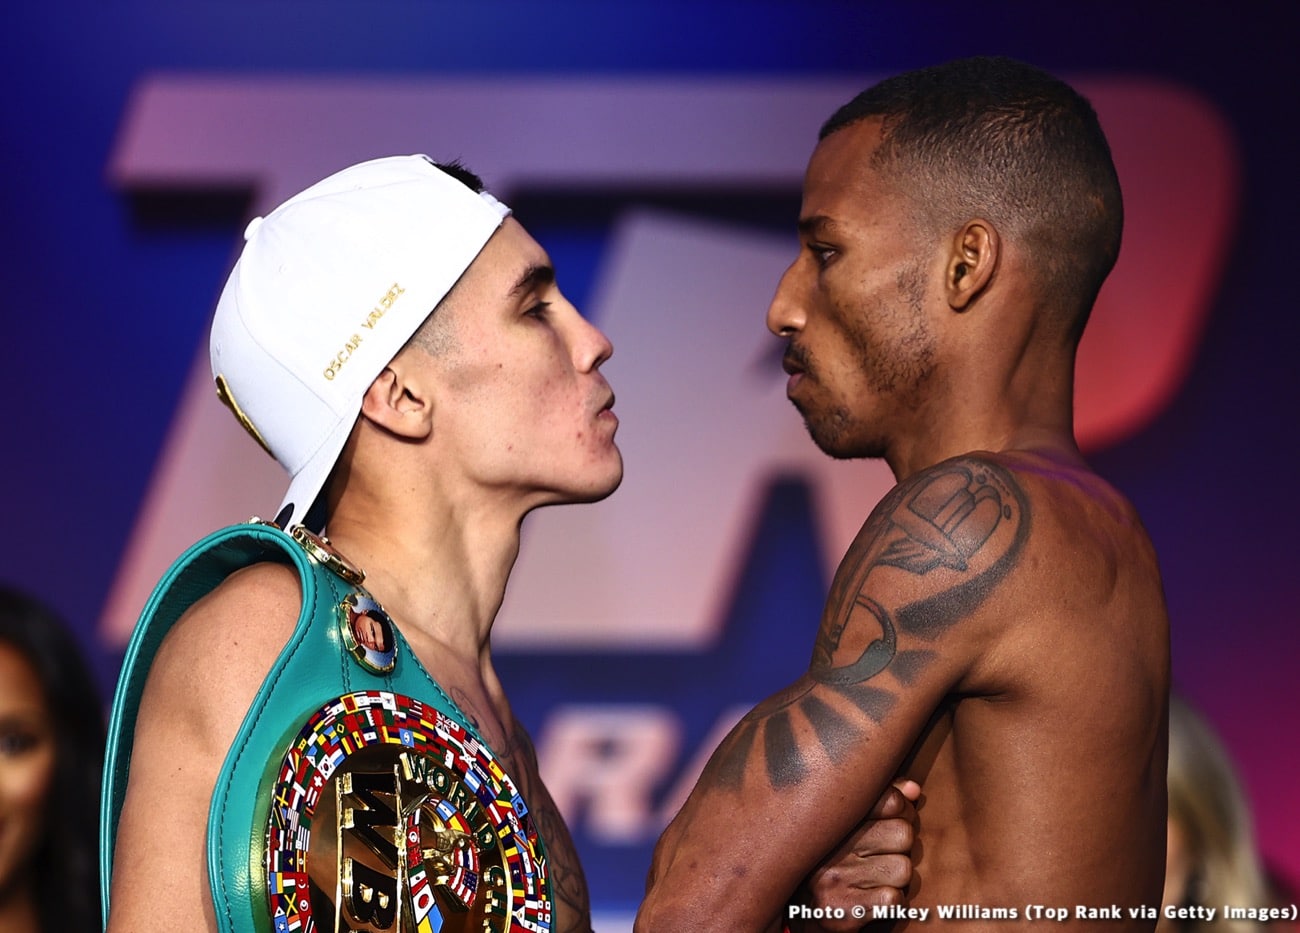 Gabriel Flores Jr boxing image / photo